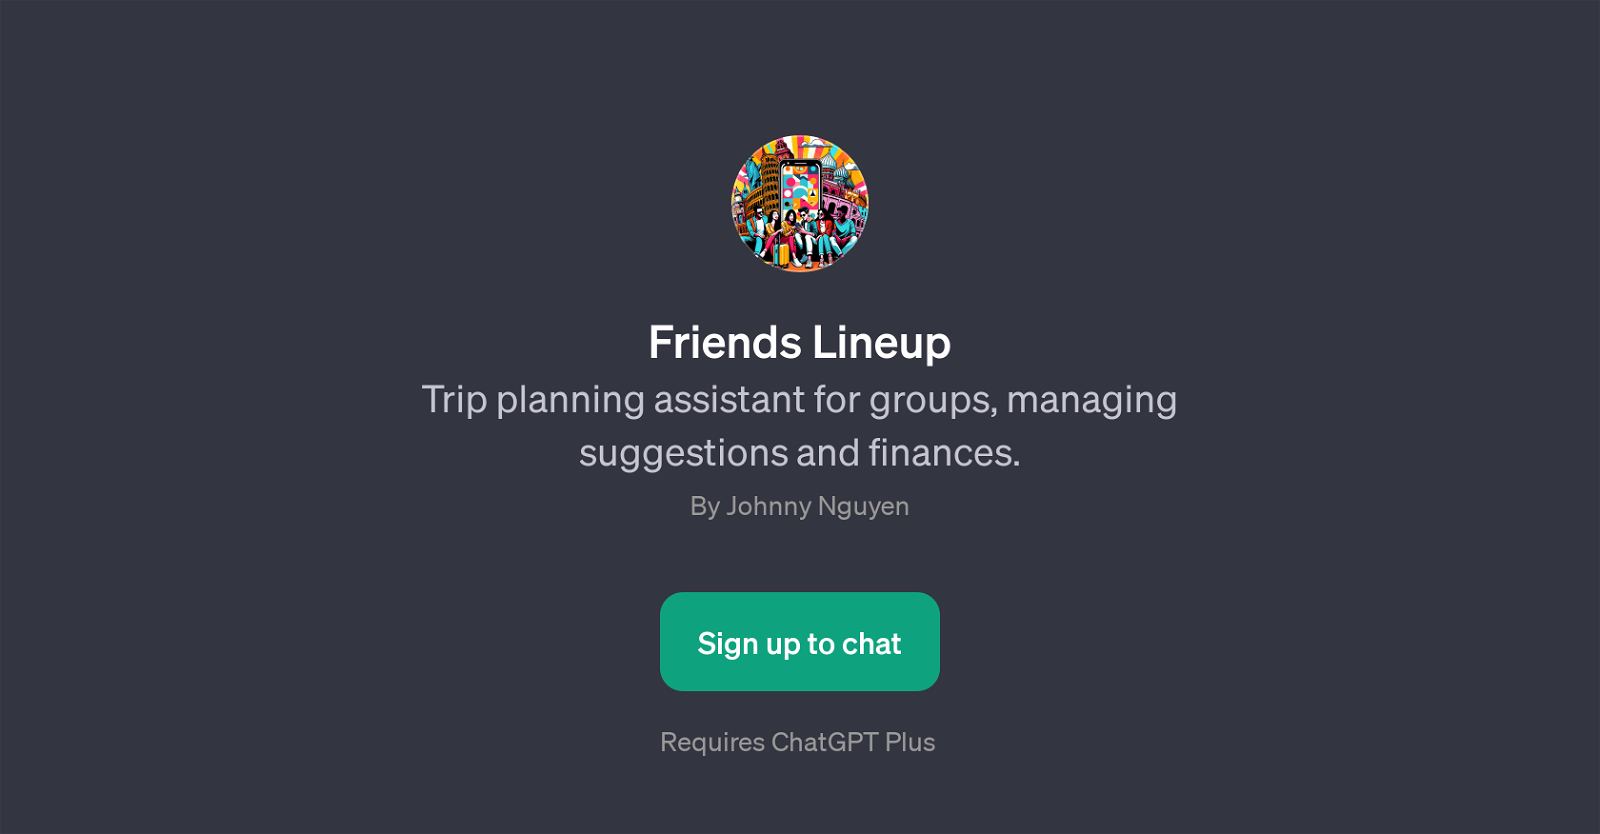 Friends Lineup website